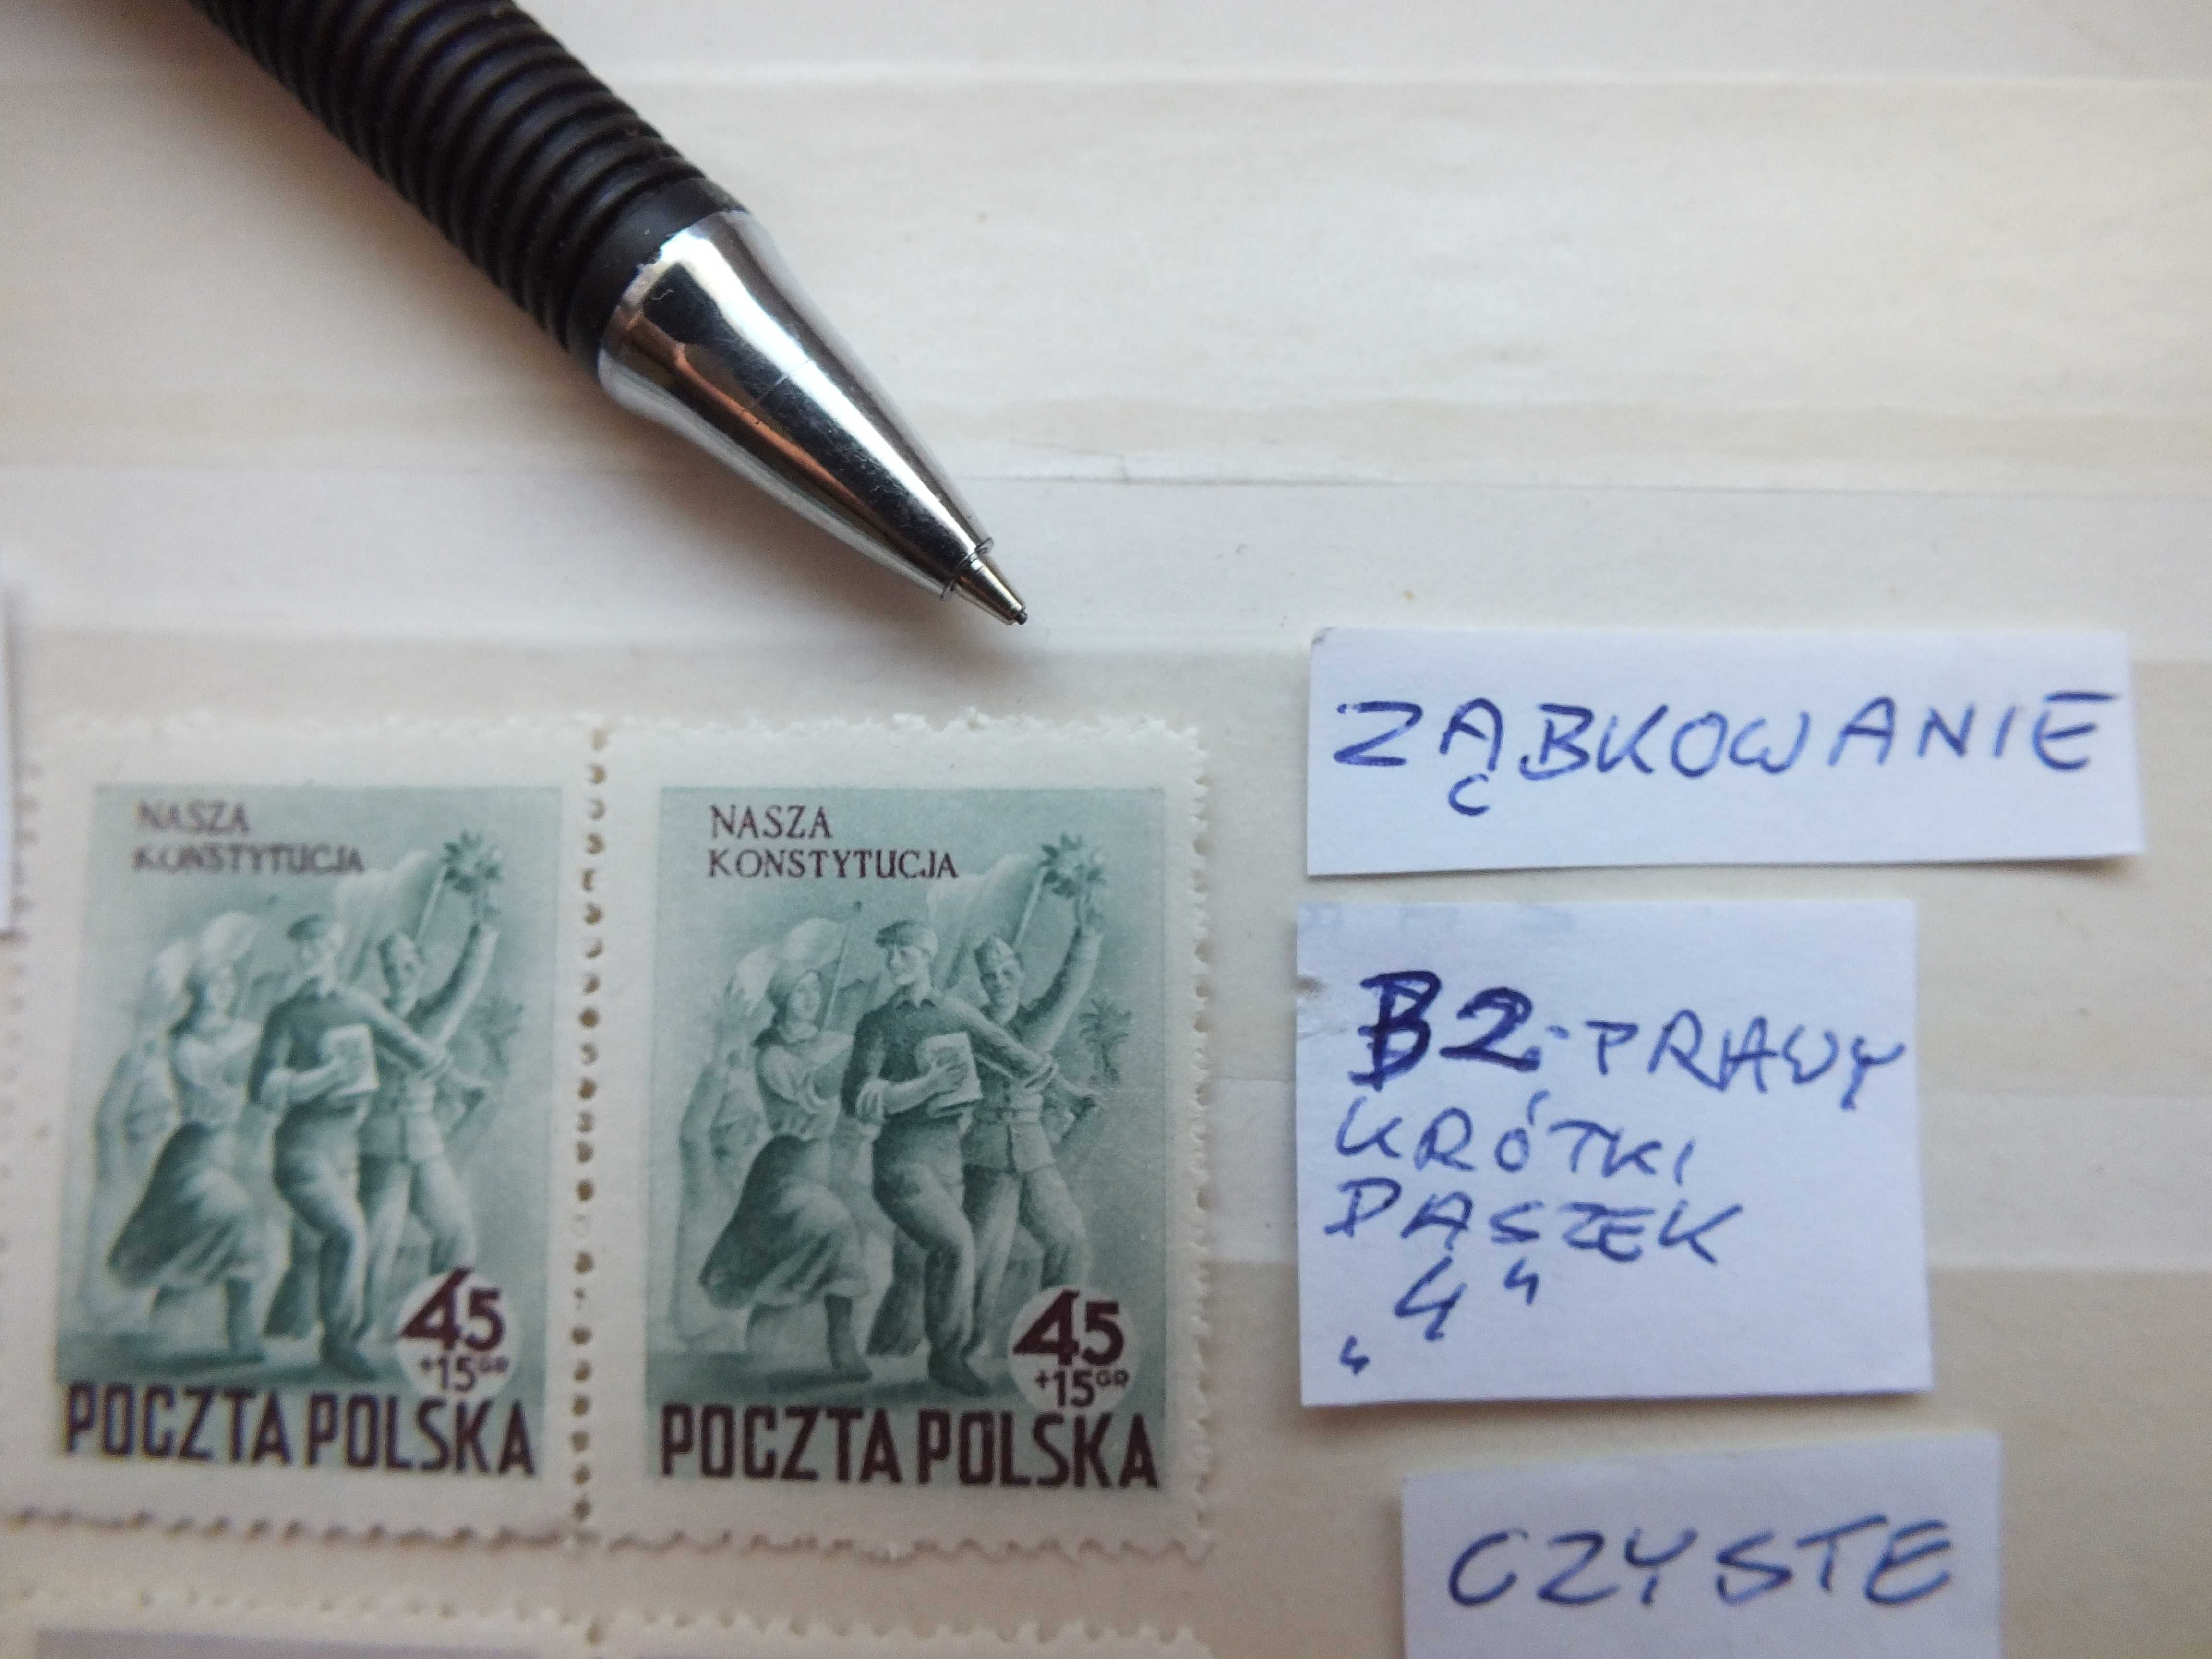 2szt. znaczki 2x parka Fi 622 BŁĄD B2 Polska 1952r. PRL czyste